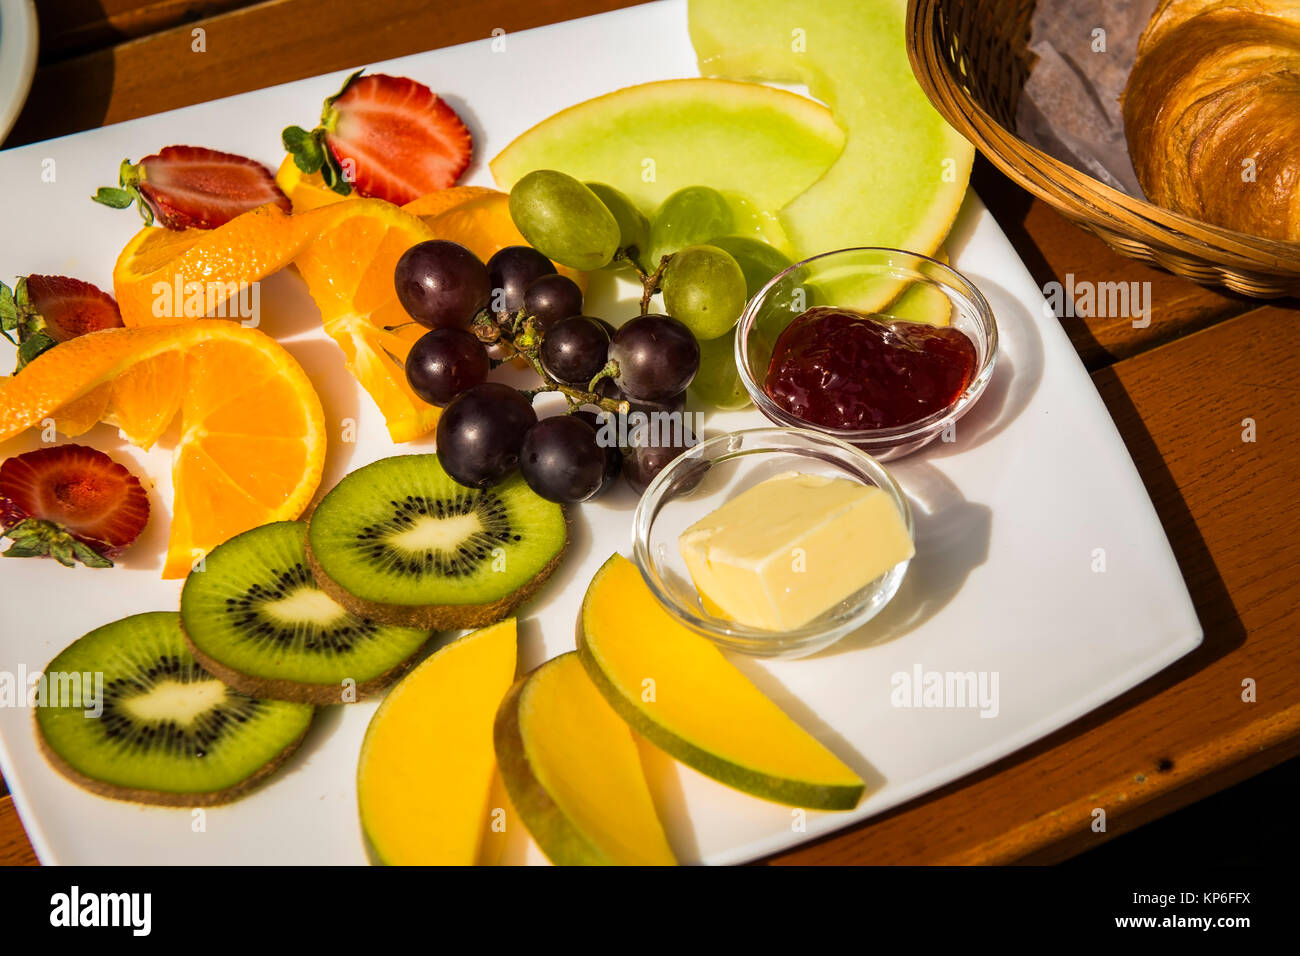 Obstteller, Fruehstueck - fruits for breakfast Stock Photo